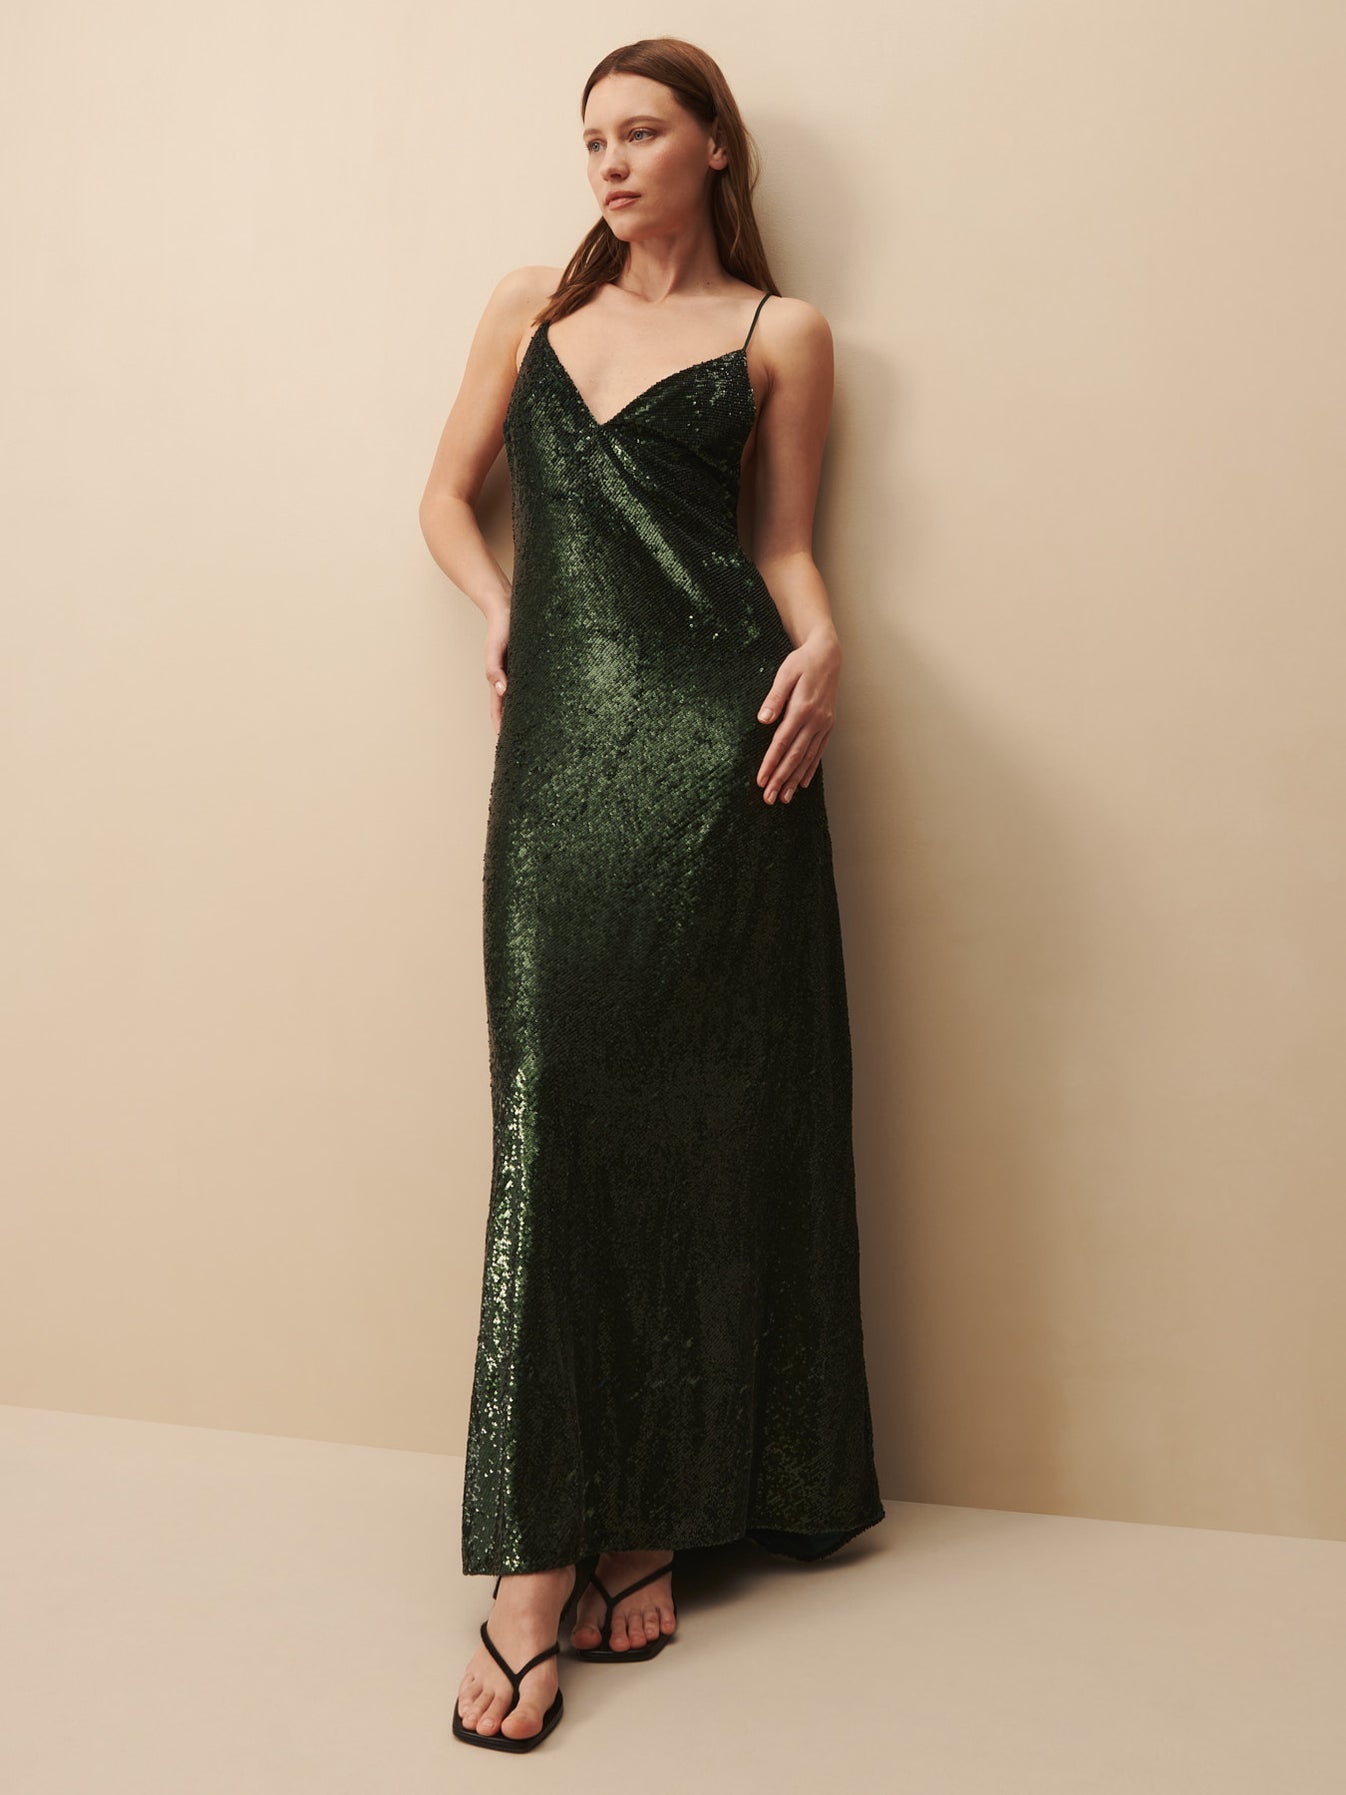 TWP Emerald Josephine Dress in sequin view 4